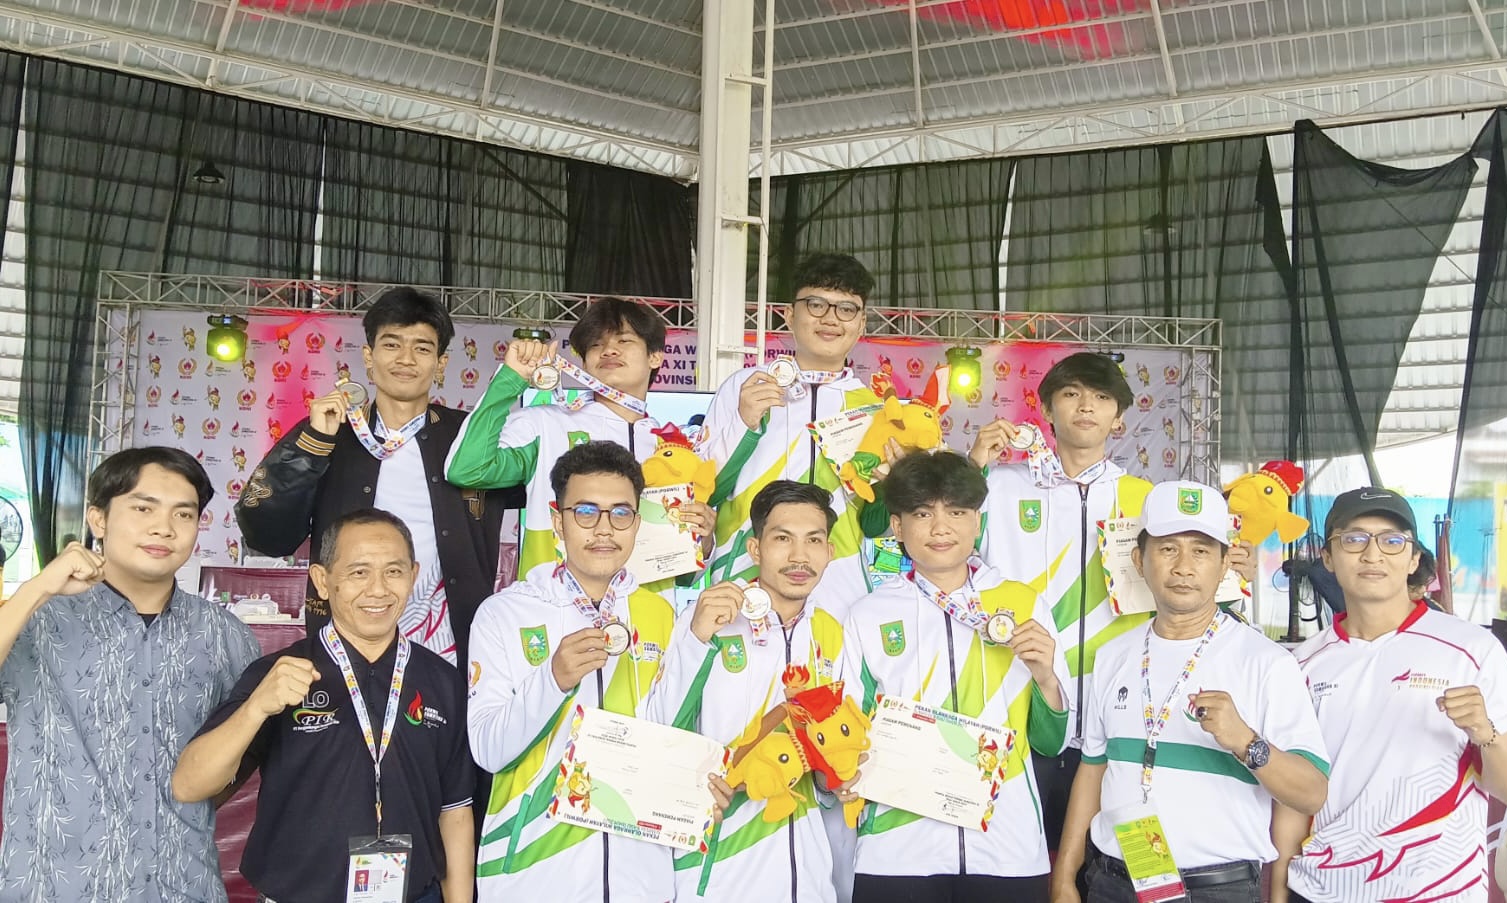 Mahasiswa Unilak Sumbang Medali di Porwil Sumatera XI, 3 Cabor Ini Raih Emas